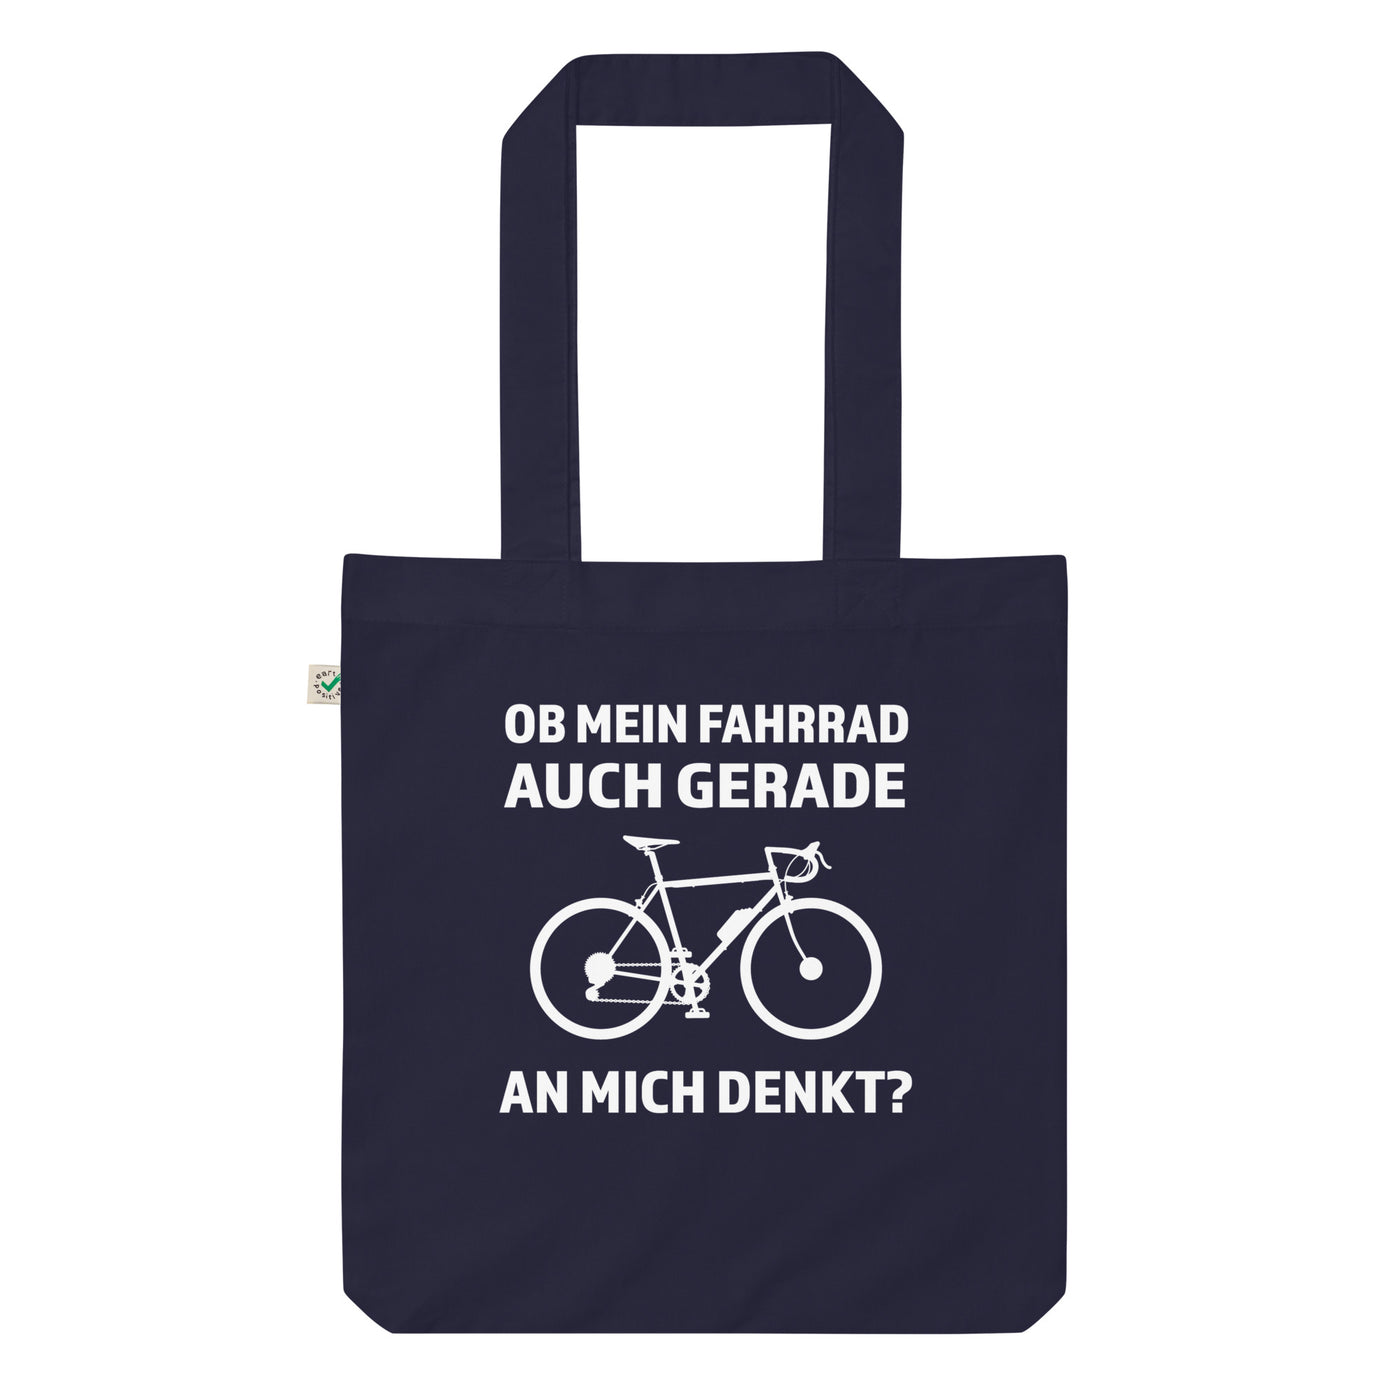 Ob Mein Fahrrad Gerade An Mich Denkt - Organic Einkaufstasche fahrrad Navy